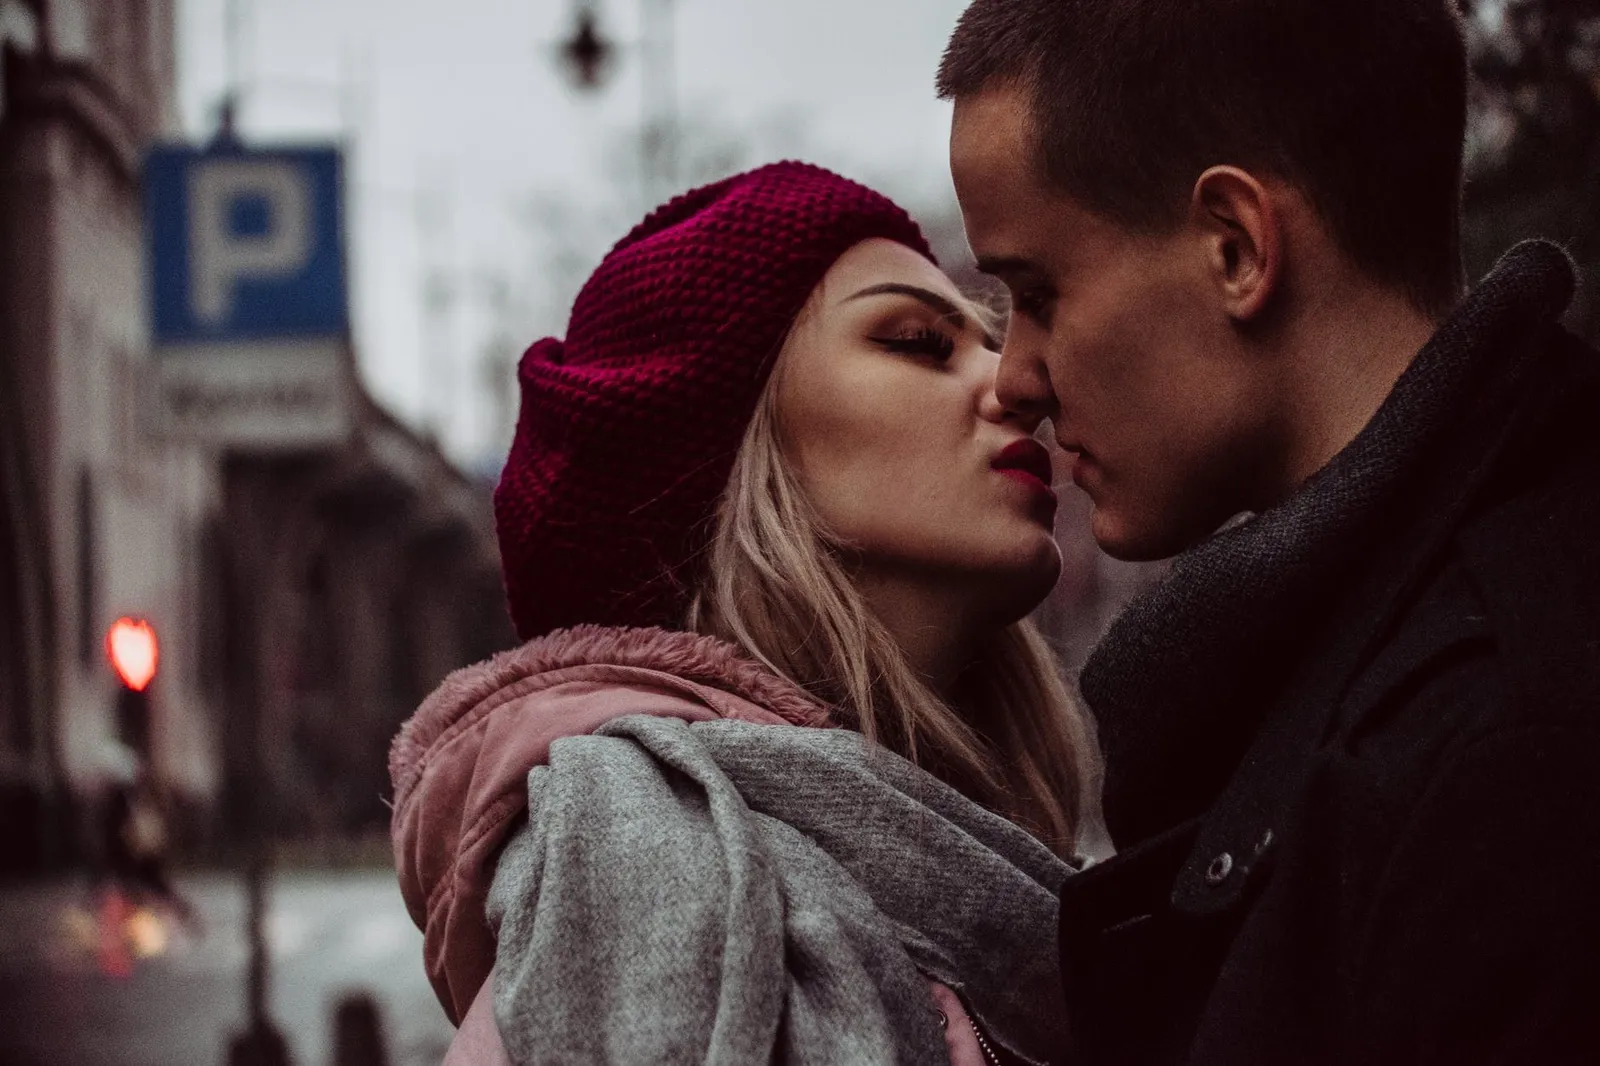 Seperti Apa Sih Ciuman yang Baik Itu? Para Ahli Beberkan Kriterianya